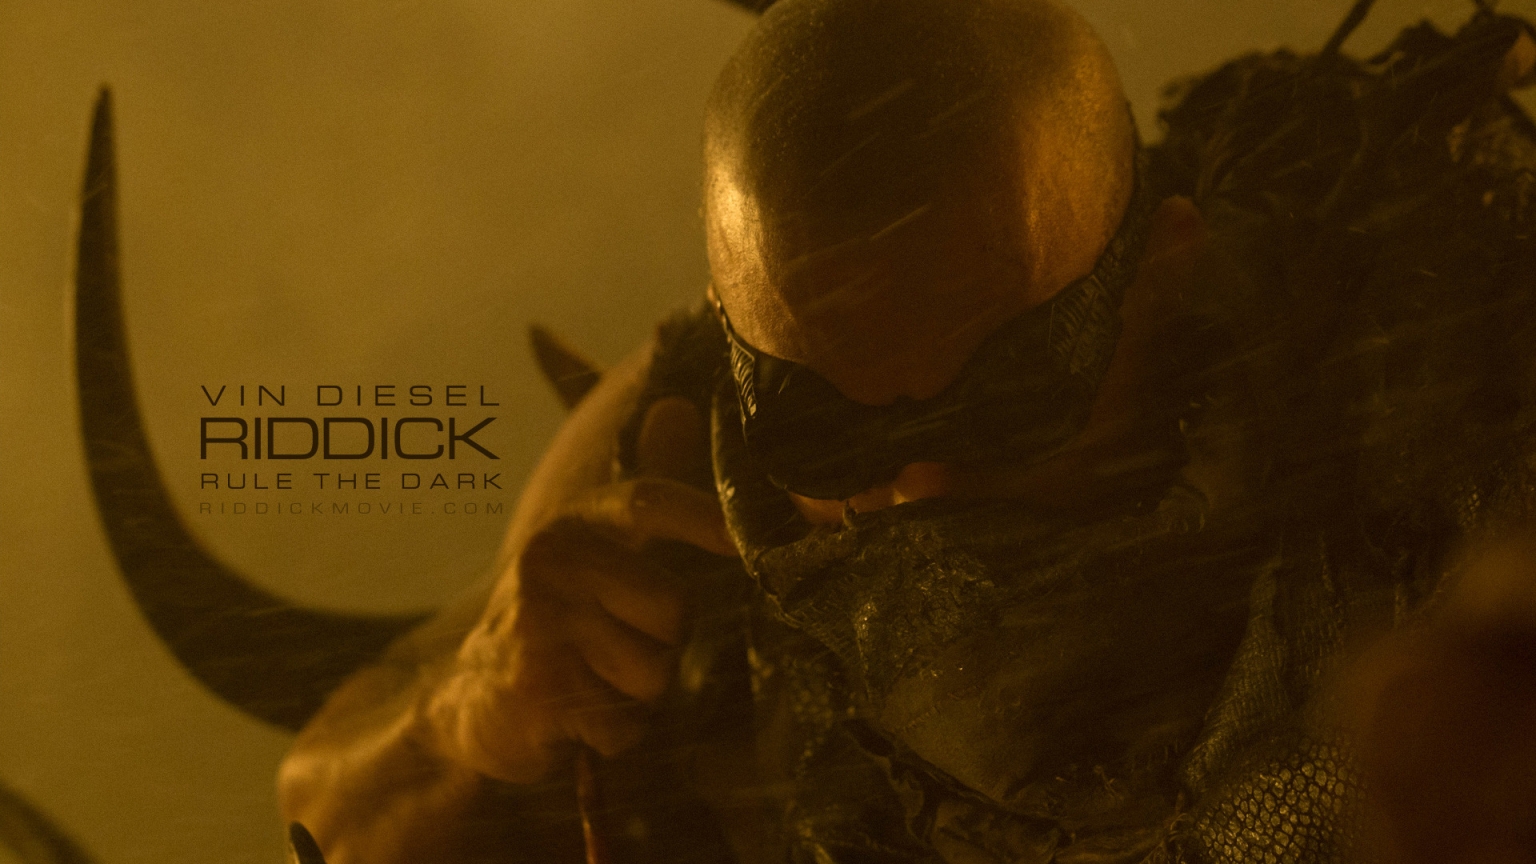 Vin Diesel Riddick for 1536 x 864 HDTV resolution